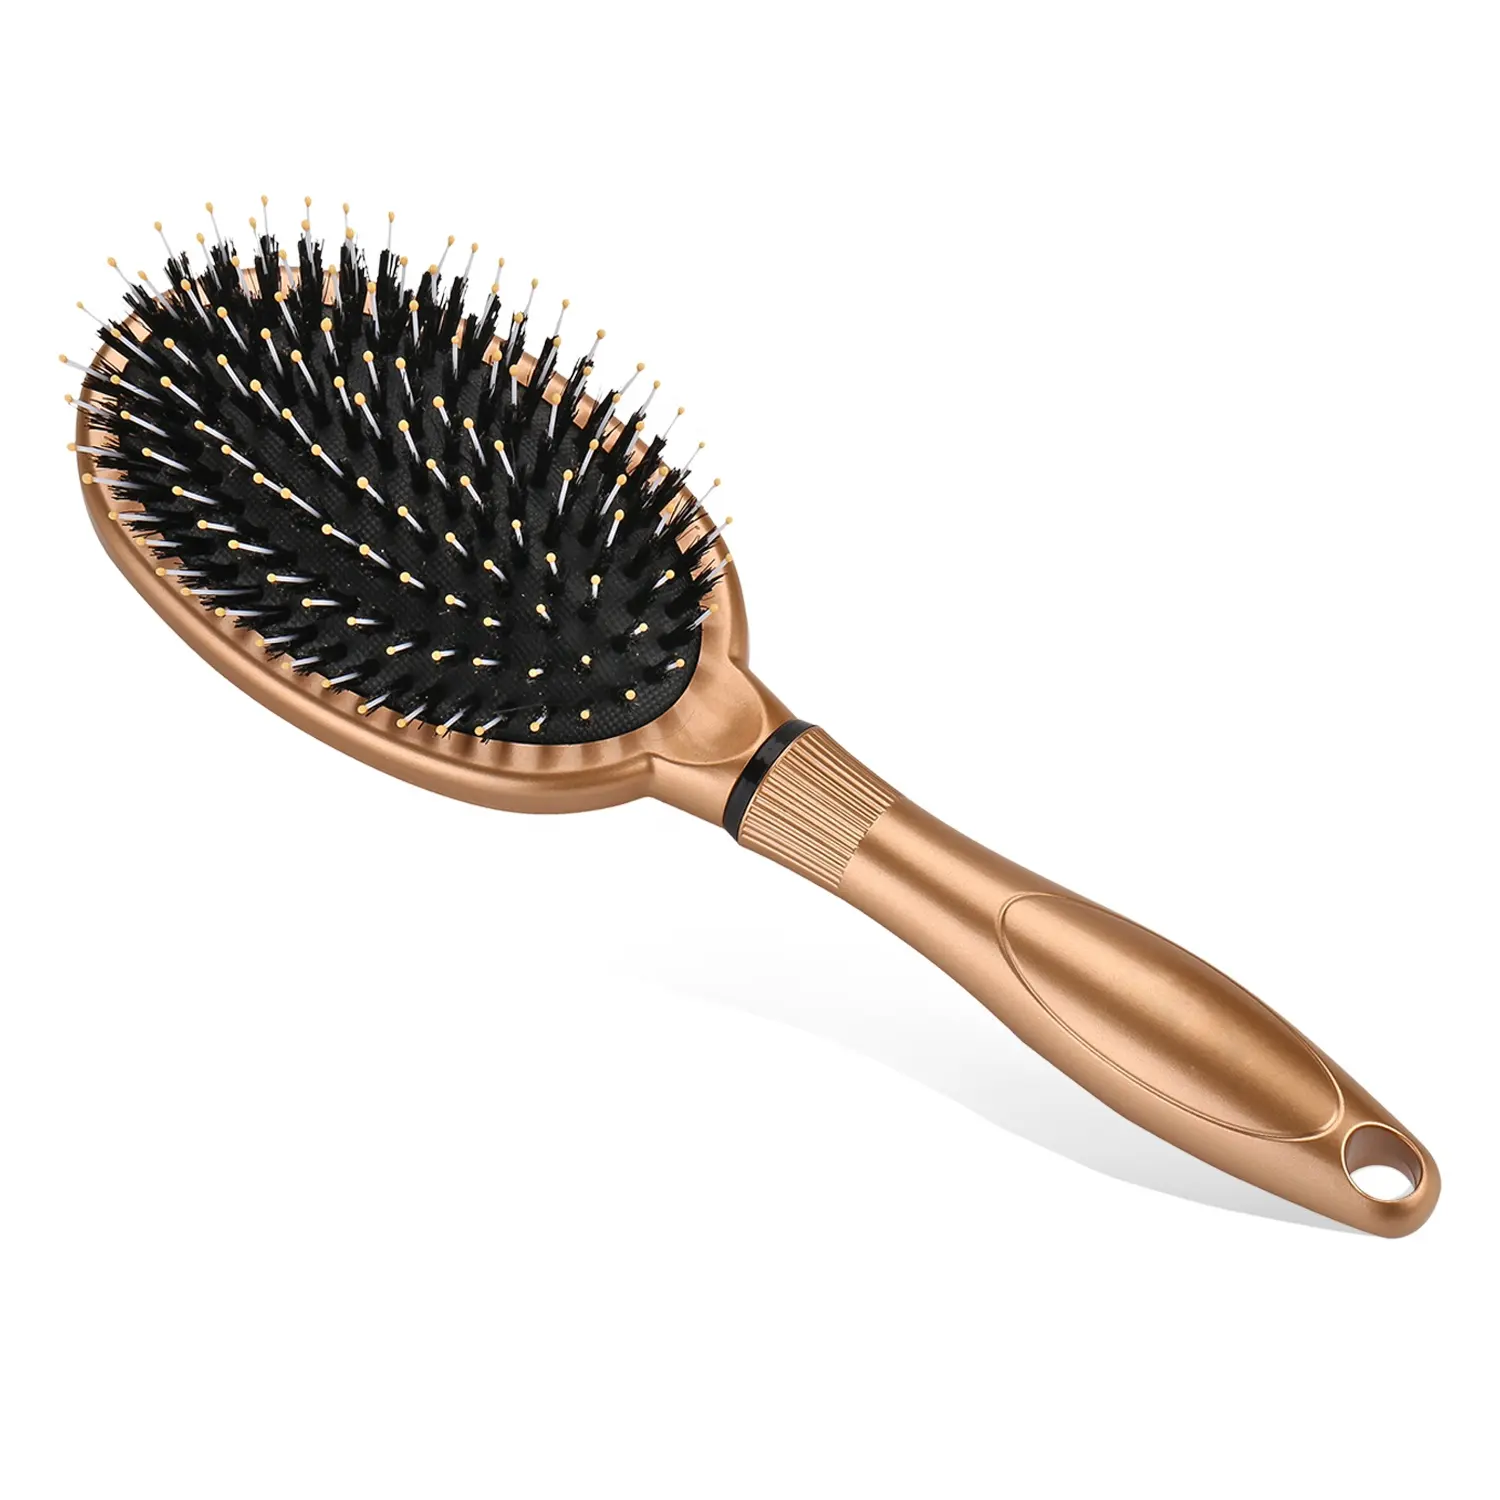 Escova de cabelo personalizada, escova de cabelo de plástico com cerdas naturais